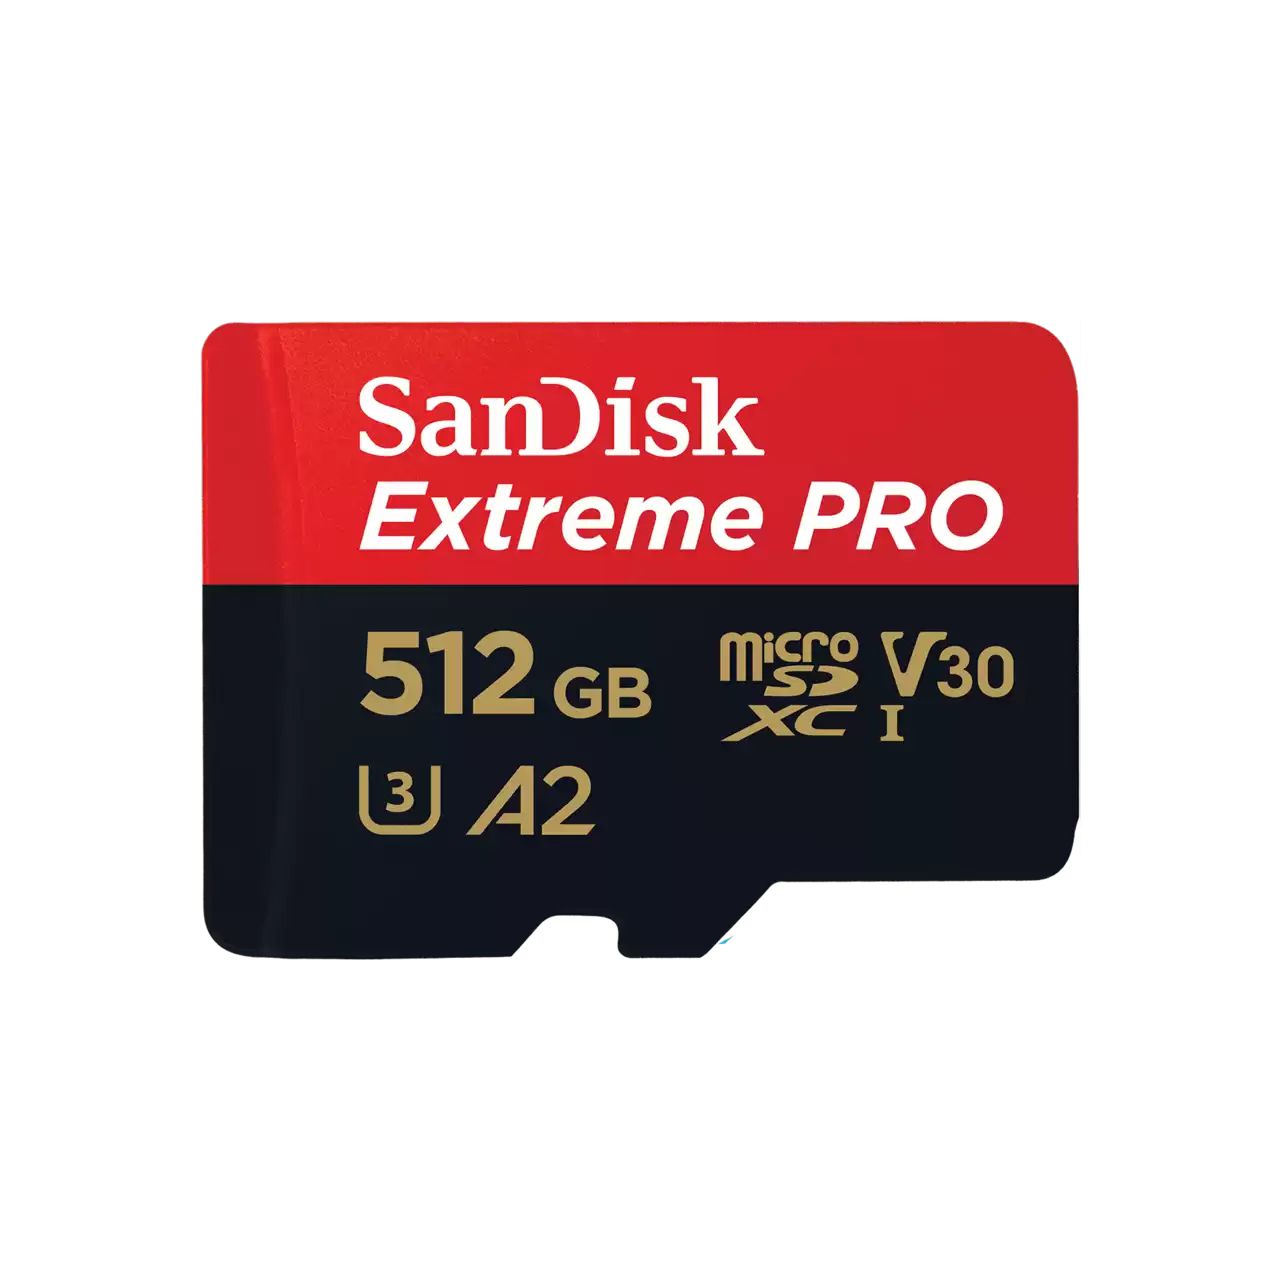 SanDisk Extreme PRO 512 Go MicroSDXC UHS-I Classe 10 - SECOMP France